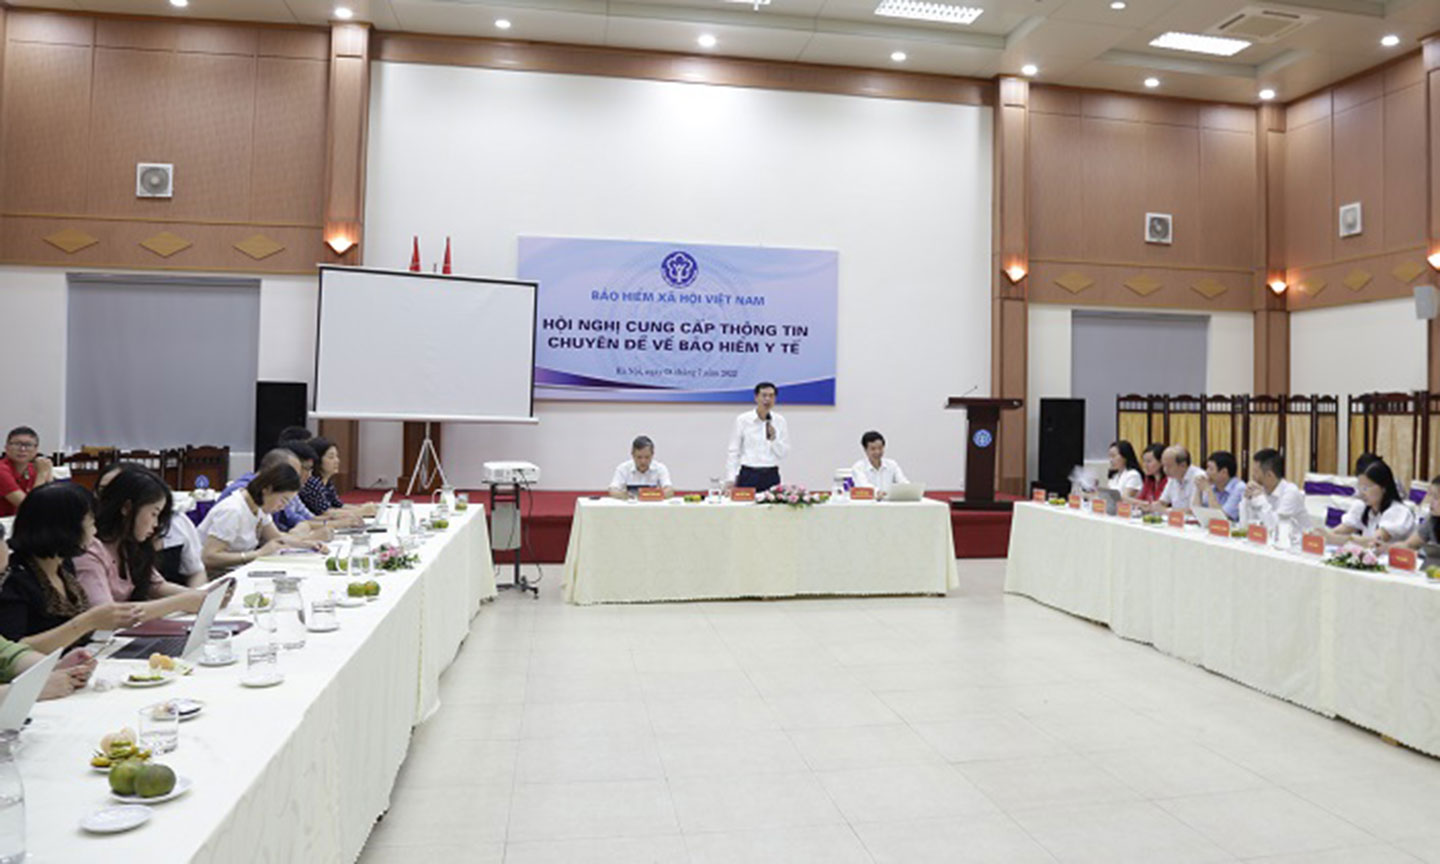 Phó Tổng Giám đốc BHXH Việt Nam  Đào Việt Ánh - cung cấp kết quả thực hiện trong Hội nghị cung cấp thông tin chuyên đề về BHYT.